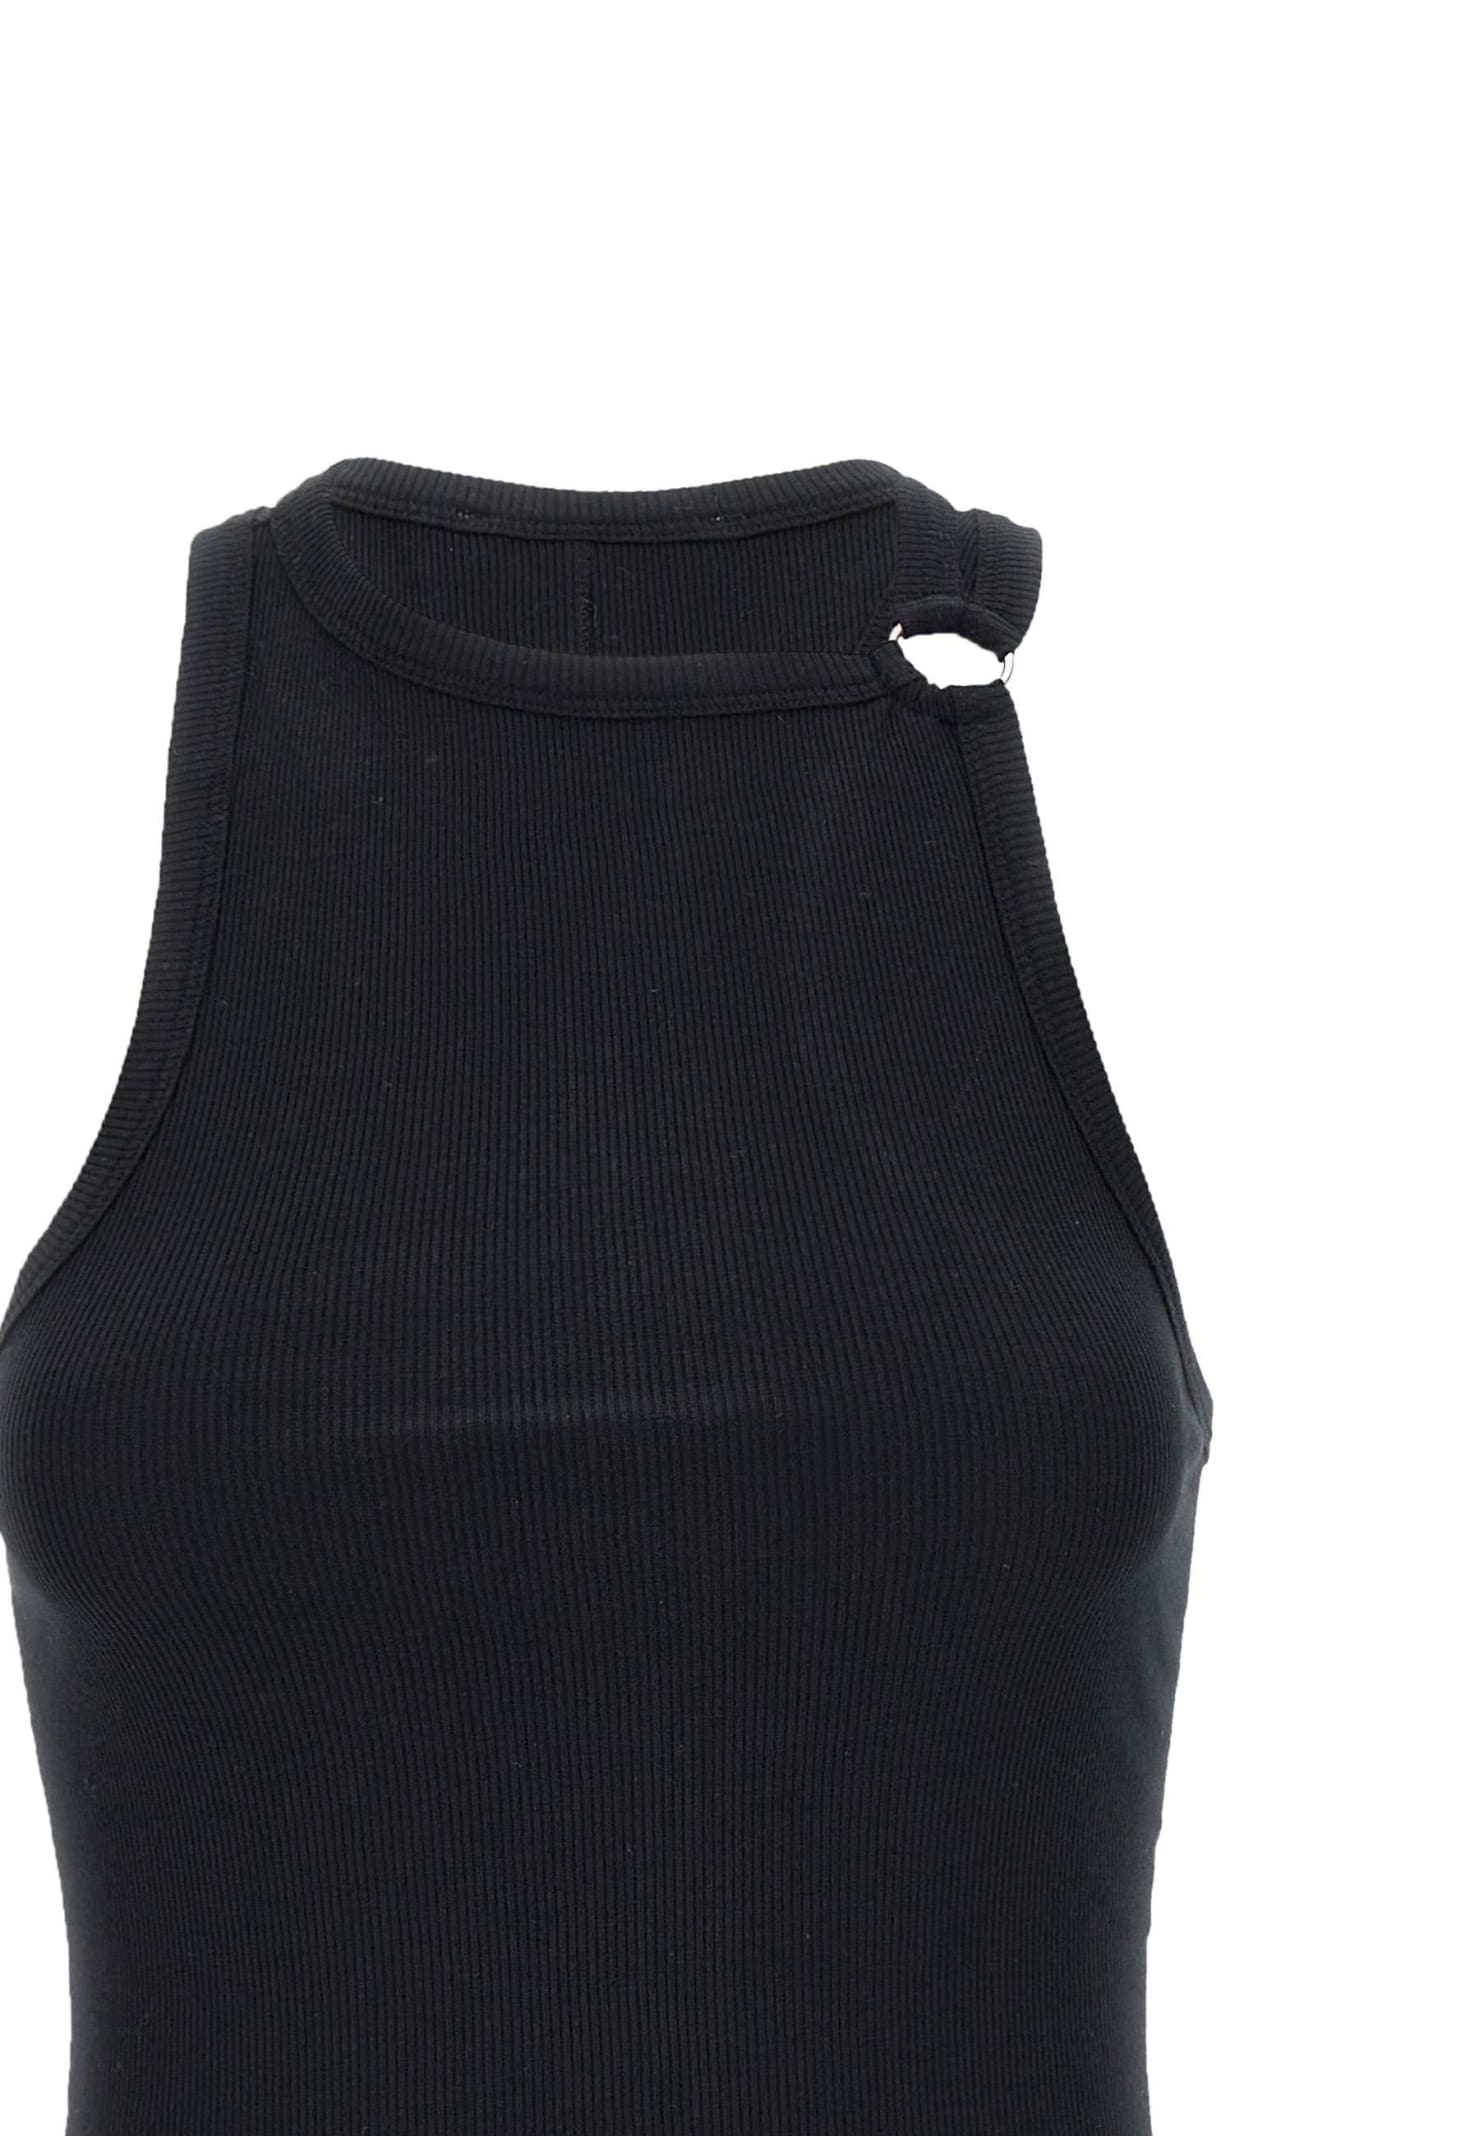 Shop Iro Polinae Cotton Top In Black